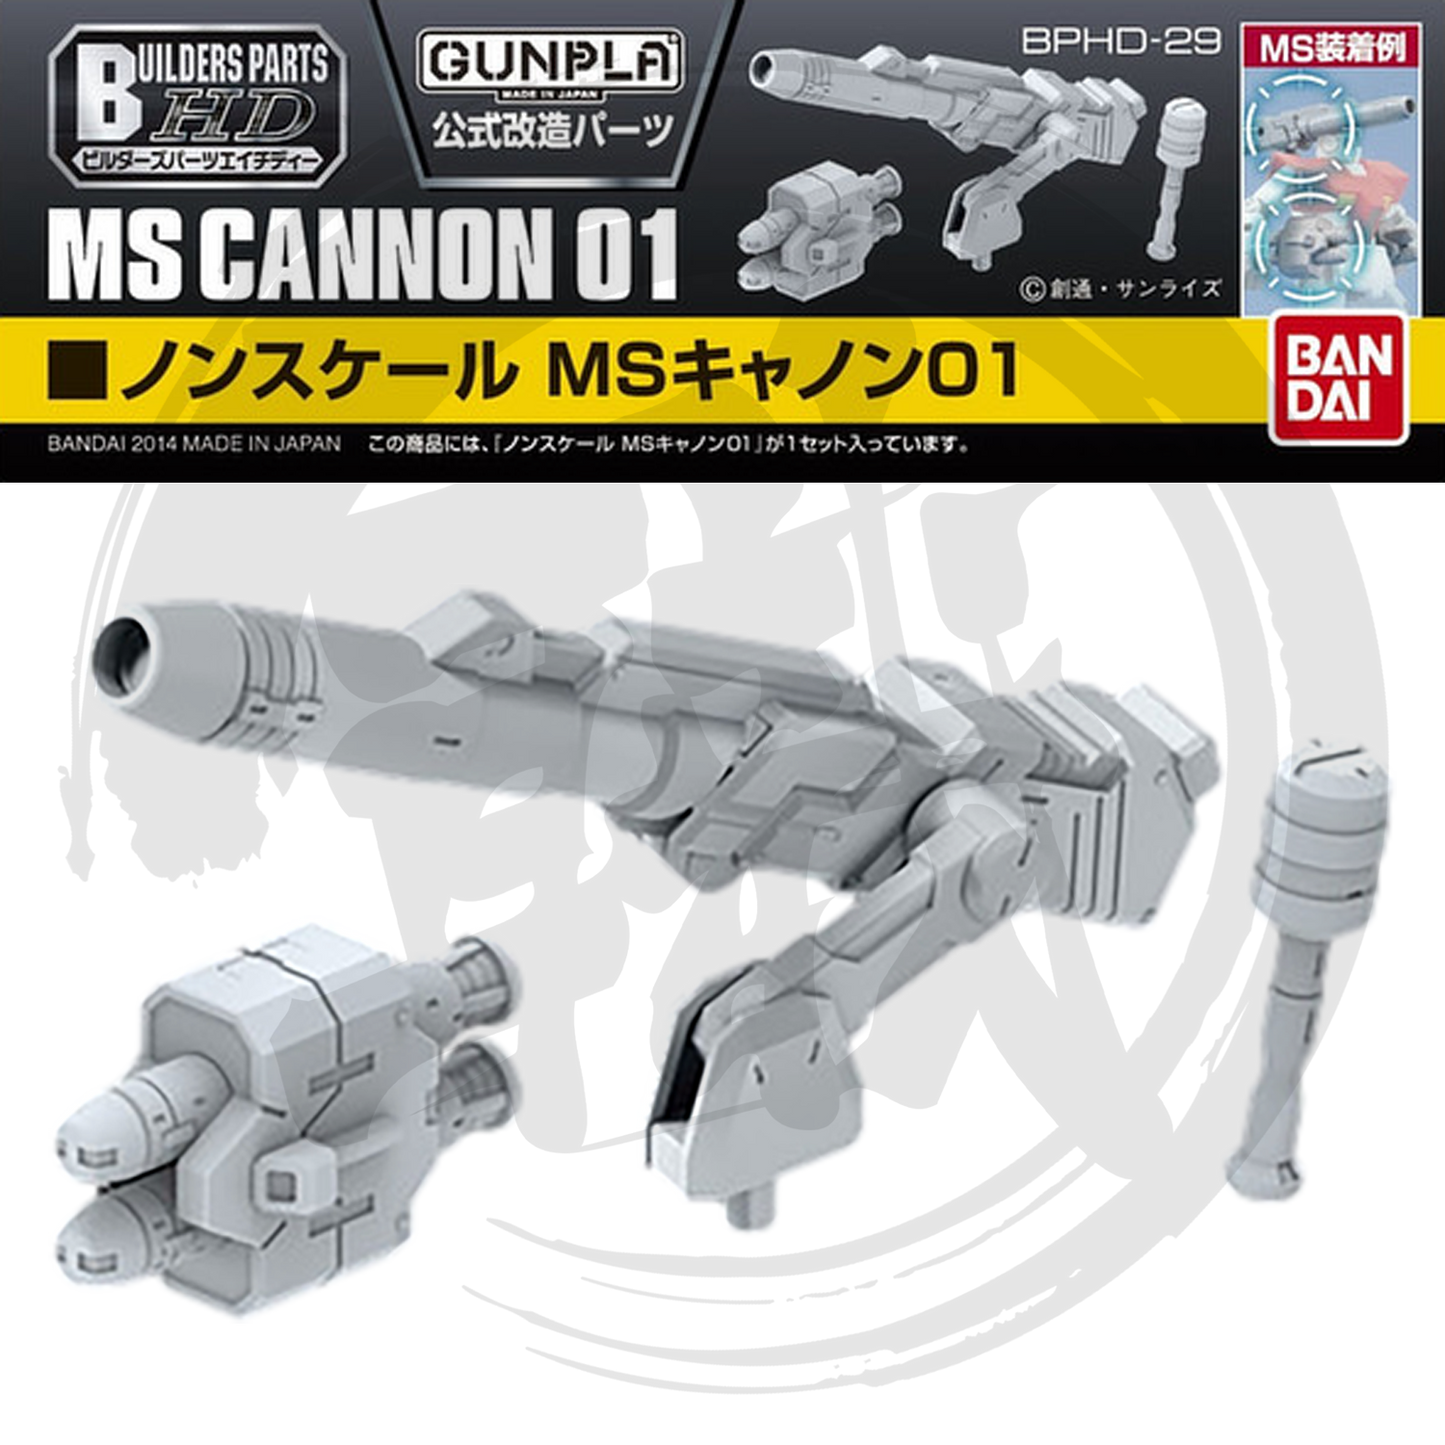 [BPHD-29] MS Cannon 01 [Non-Scale] - ShokuninGunpla